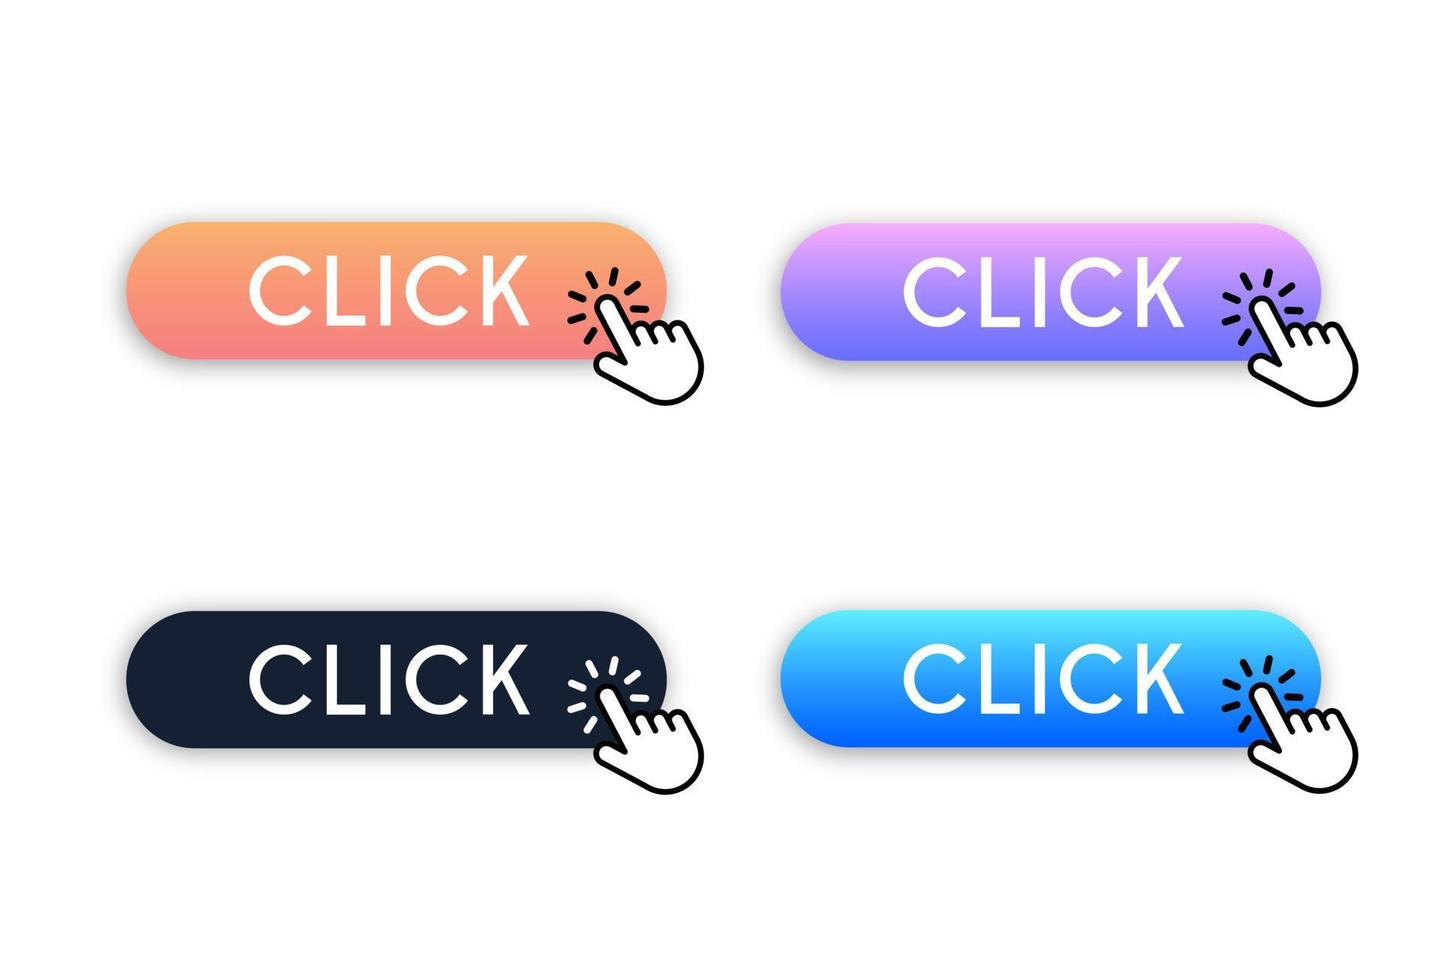 haga clic en el conjunto de botones para el diseño de sitios web. haga clic en el botón de degradado para decorar el programa y darle un aspecto moderno. haga clic en el vector del cursor de mano.